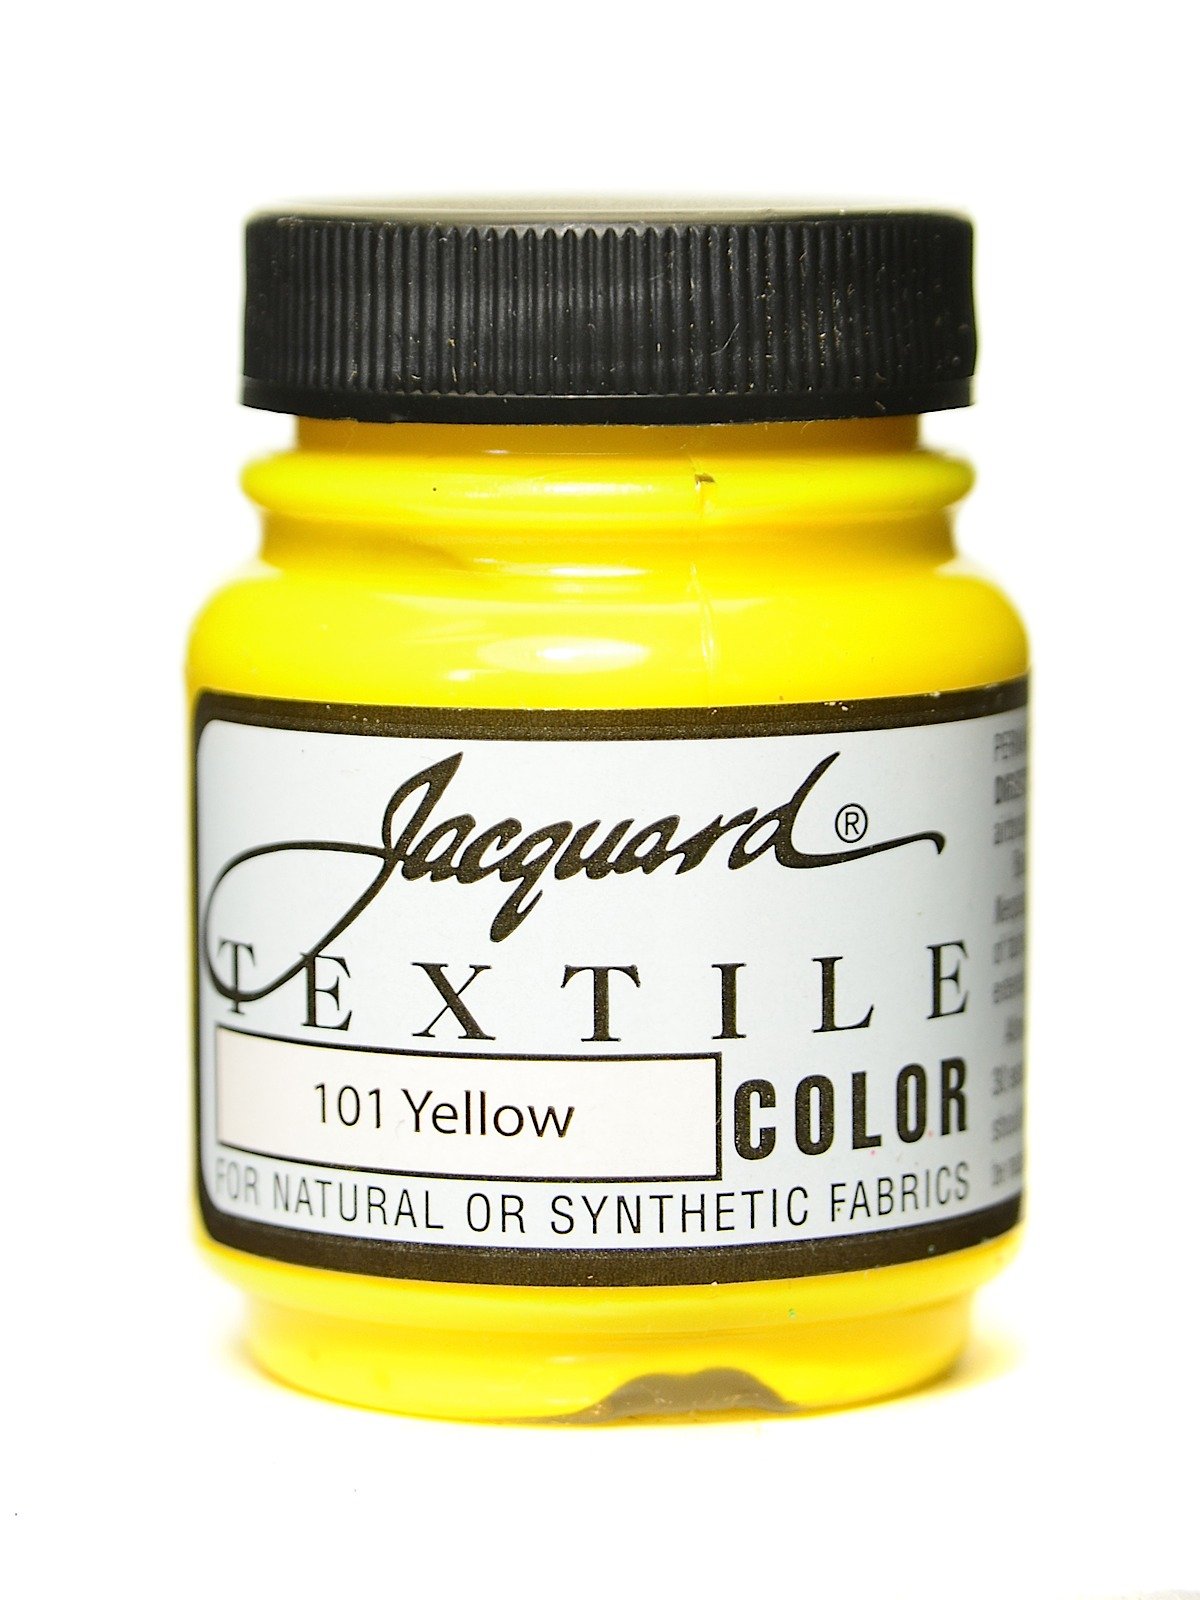 Jacquard Textile Color Fabric Paint 2.25oz Clear Extender